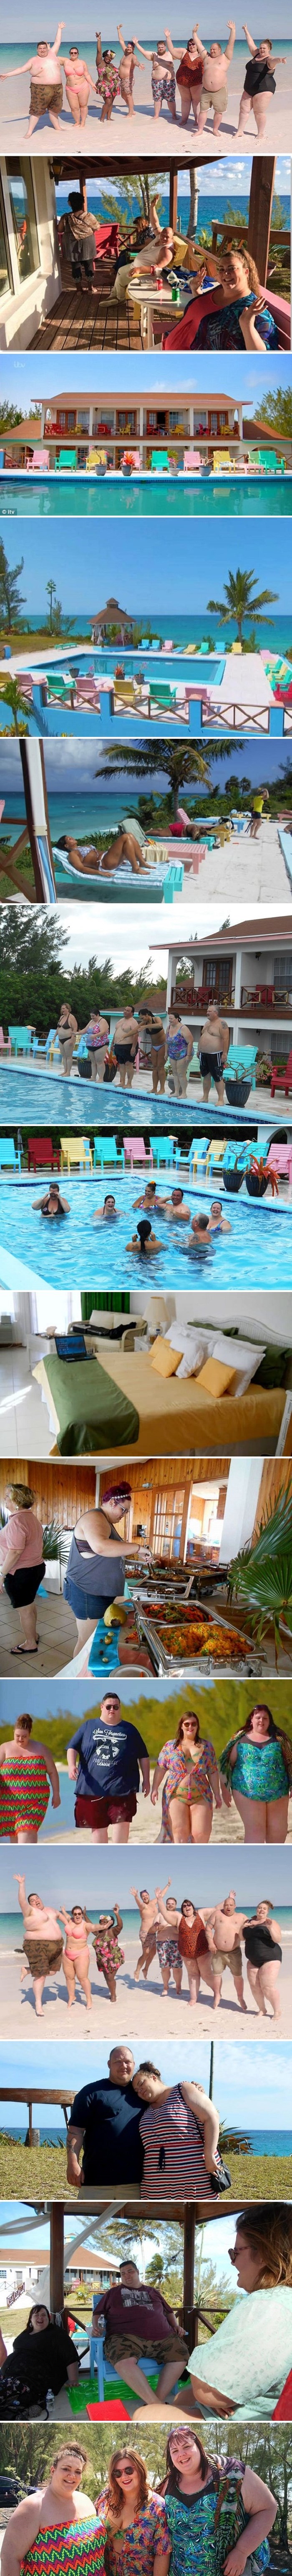 Ovaj hotelski resort idealno je mjesto za ljetovanje ako ste osoba s viškom kilograma